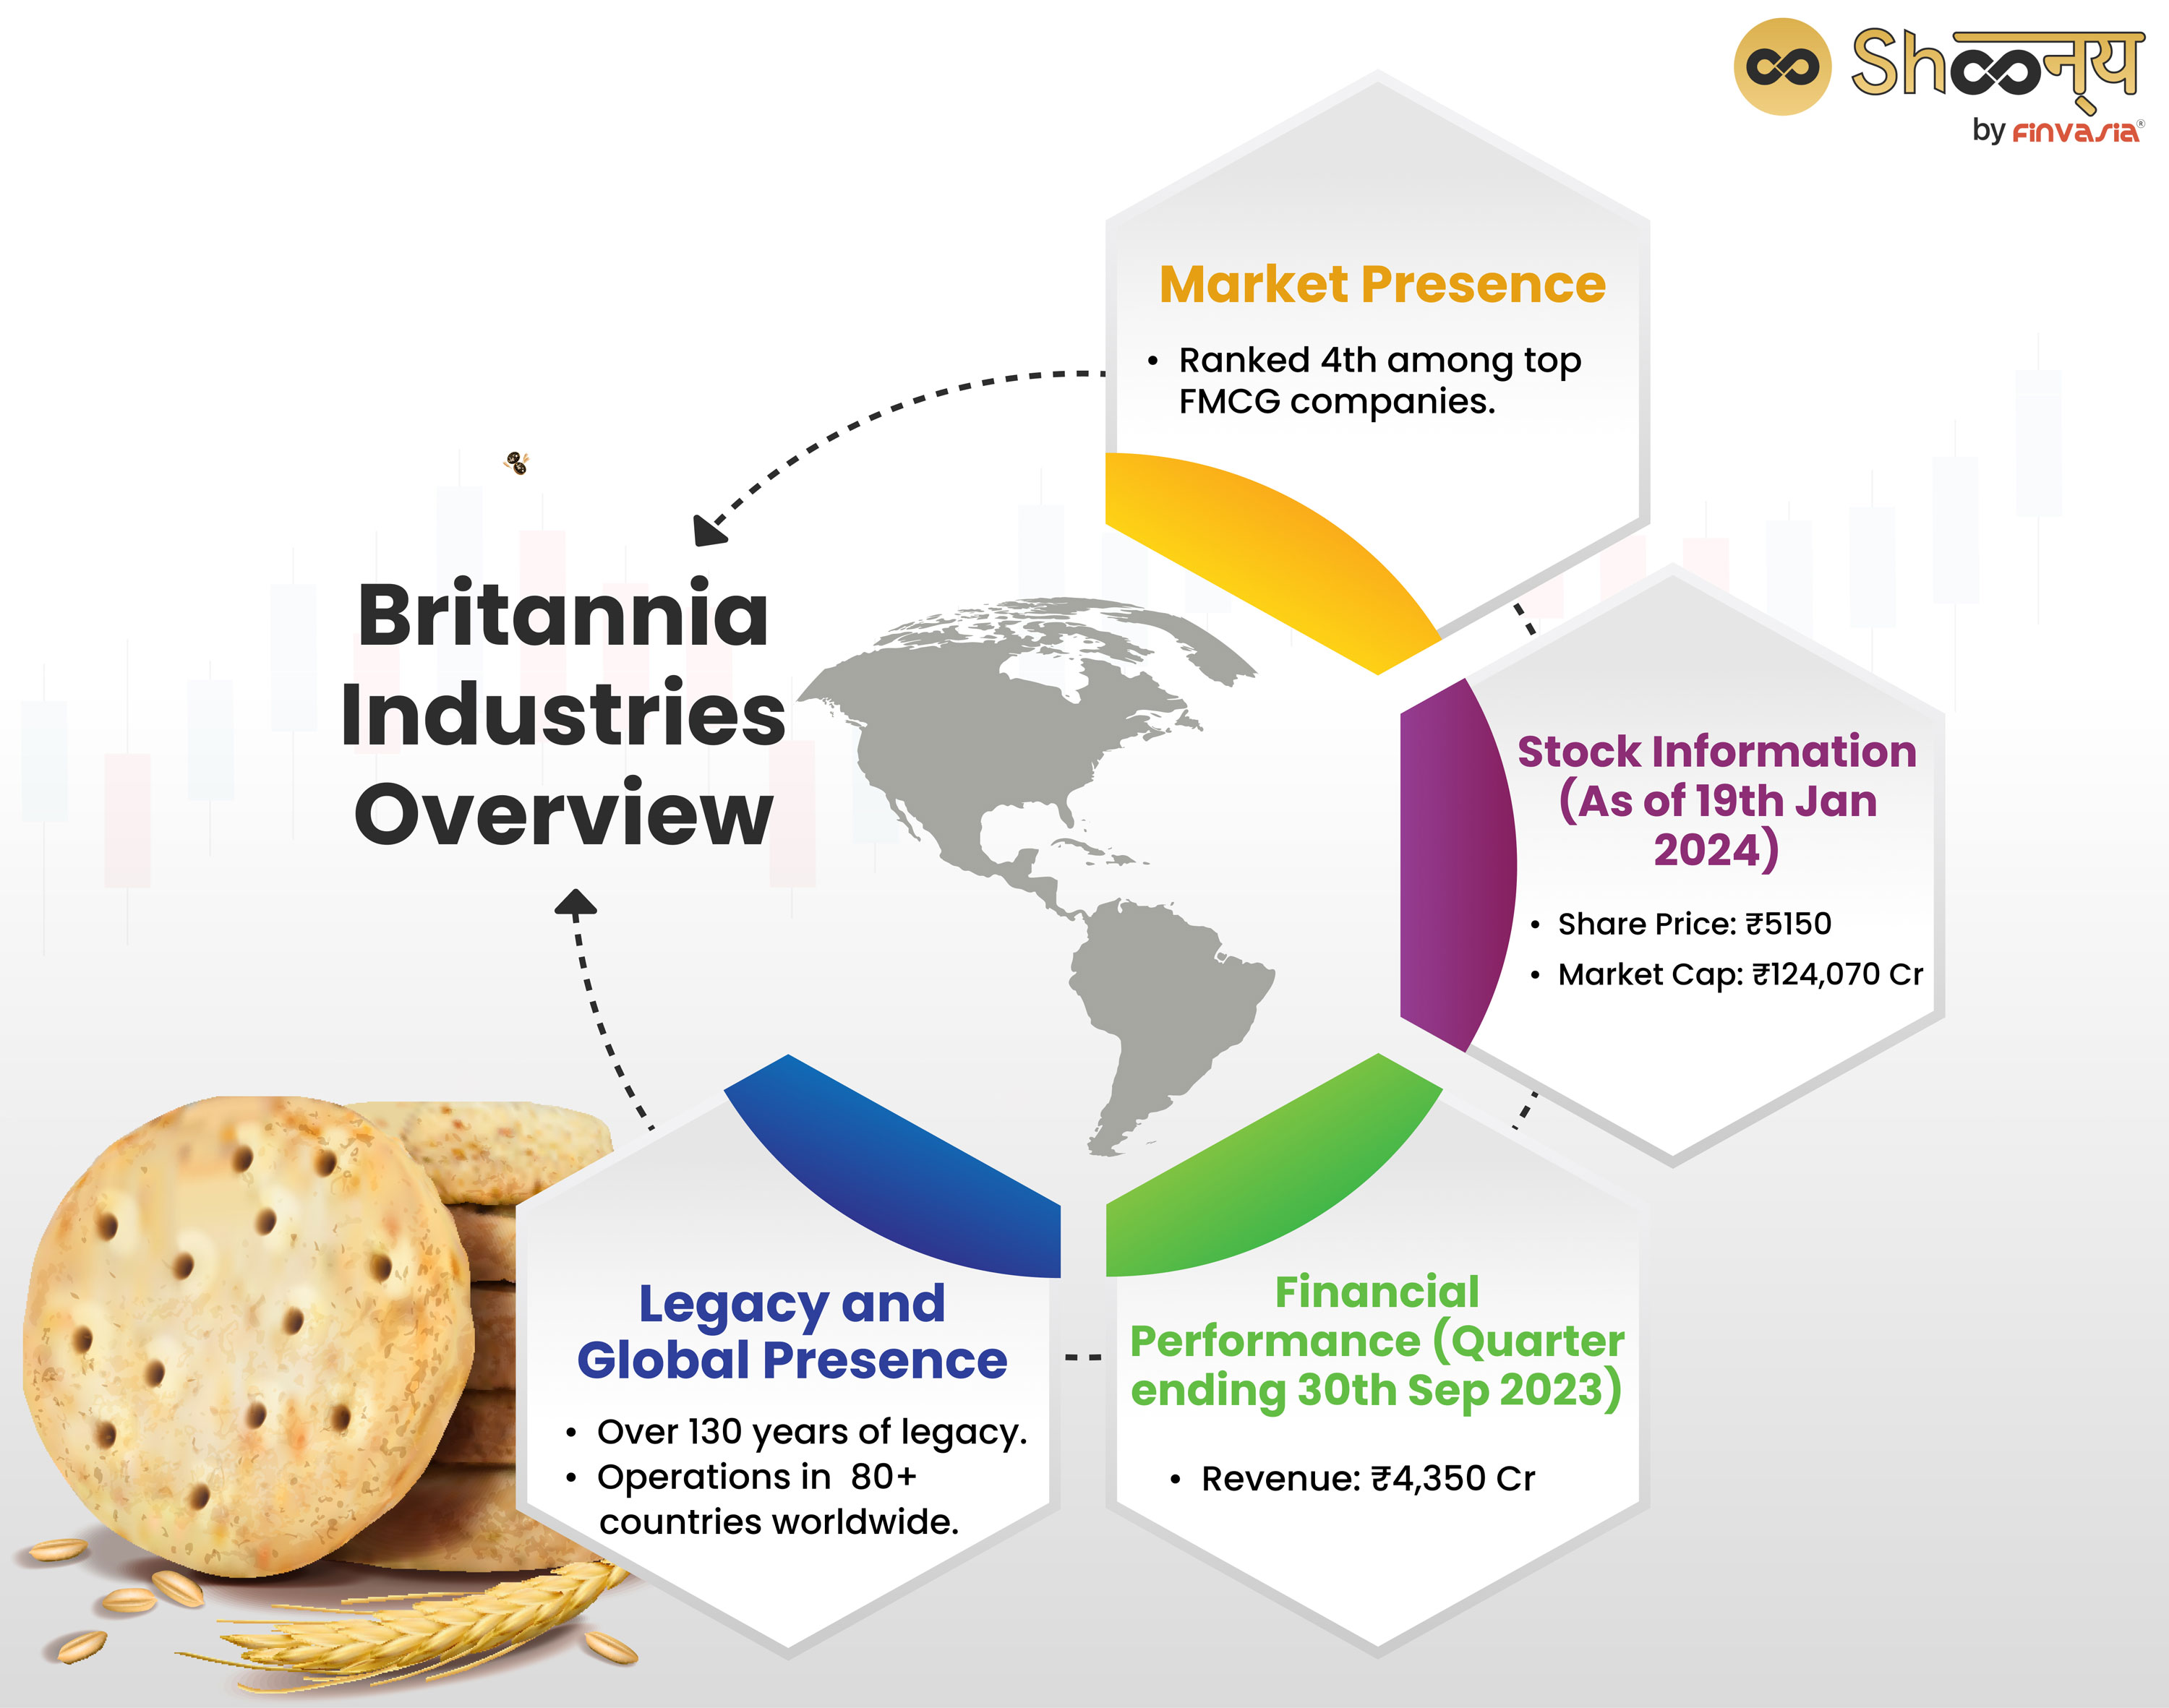 Britannia Industries Overview
